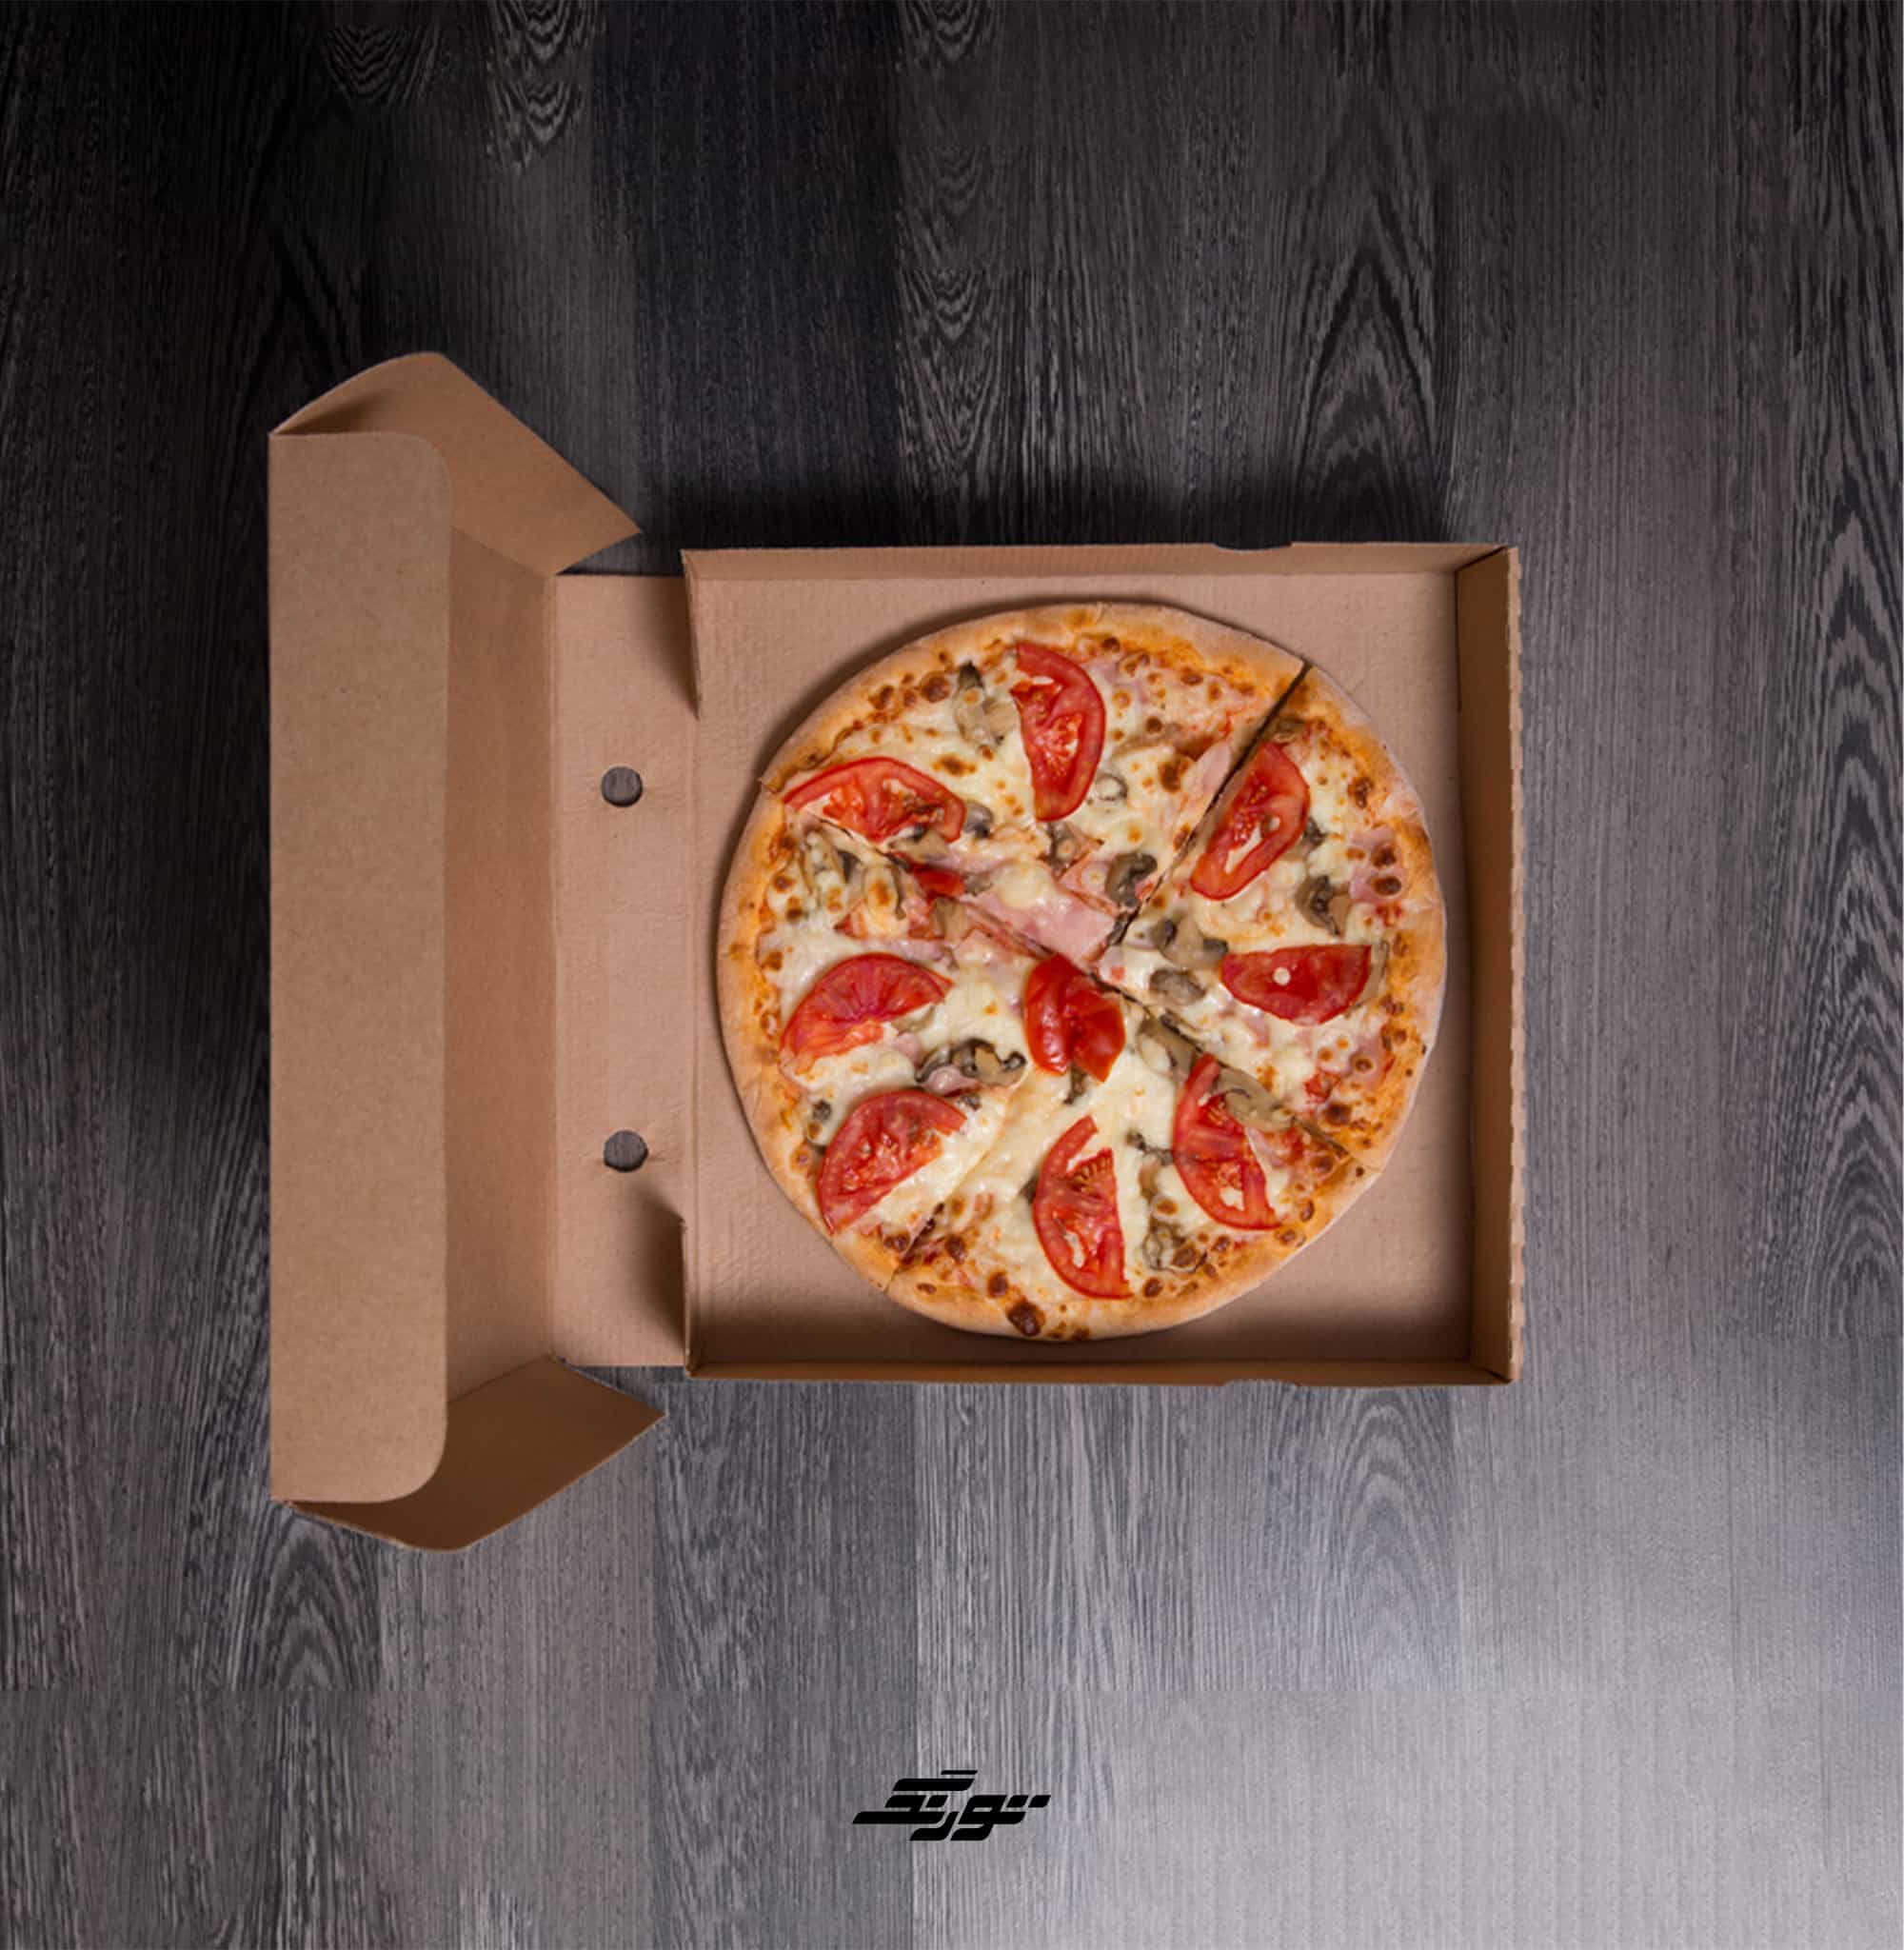 خرید جعبه پیتزا سایز 34 بسته 100 عددی